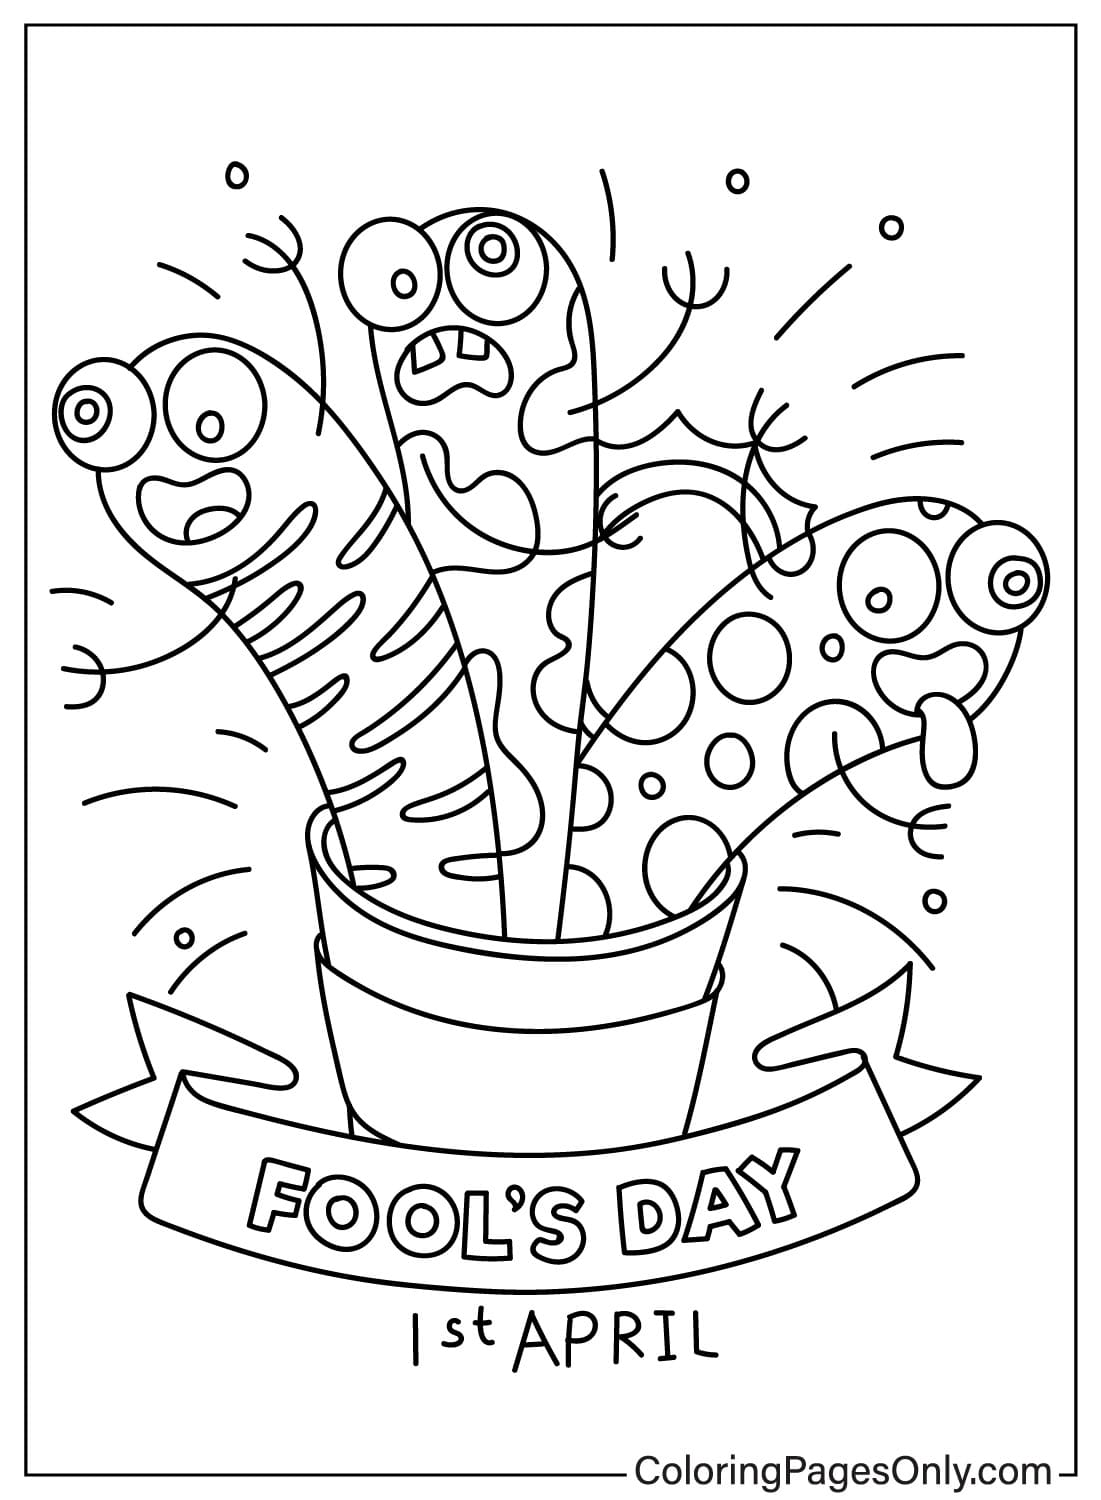 Dibujo para colorear Día de los Inocentes de April Fool's Day